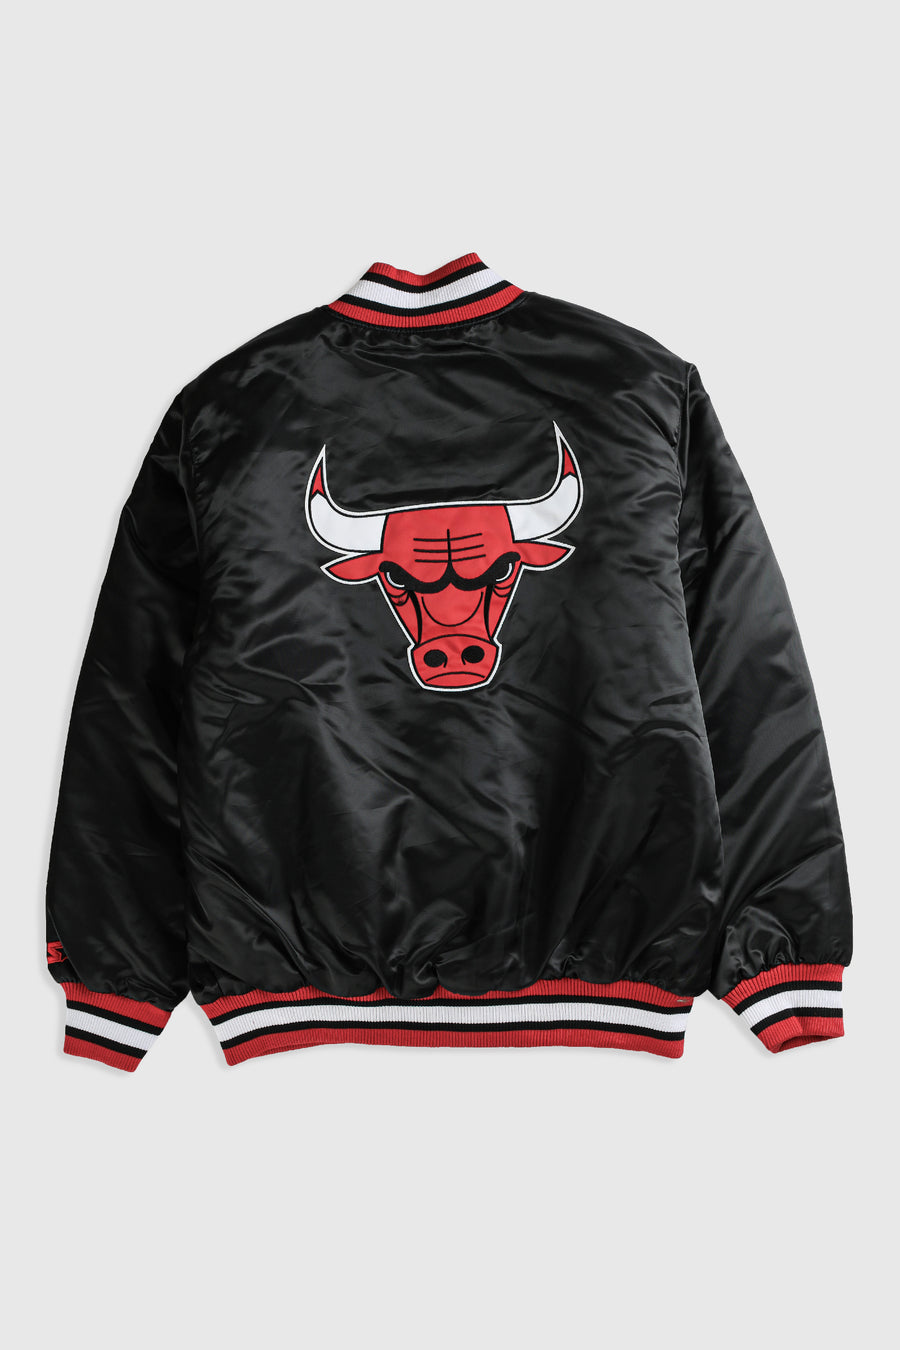 Vintage Bulls NBA Satin Bomber Jacket - XL